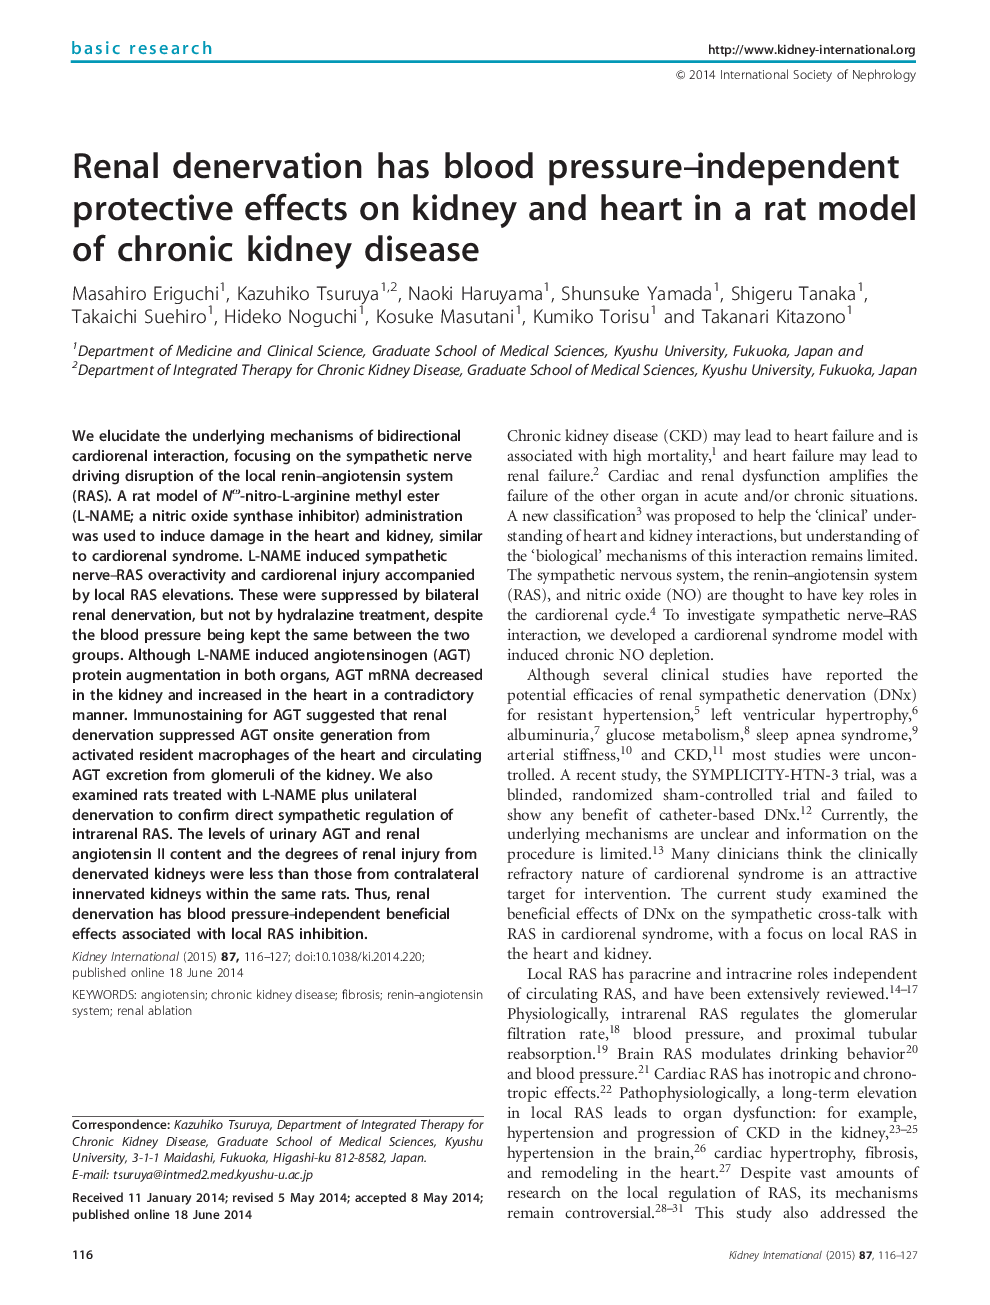 انسداد کلیه اثرات محافظتی بدون فشار خون بر روی کلیه و قلب در یک مدل موش بیماری کلیوی مزمن است 